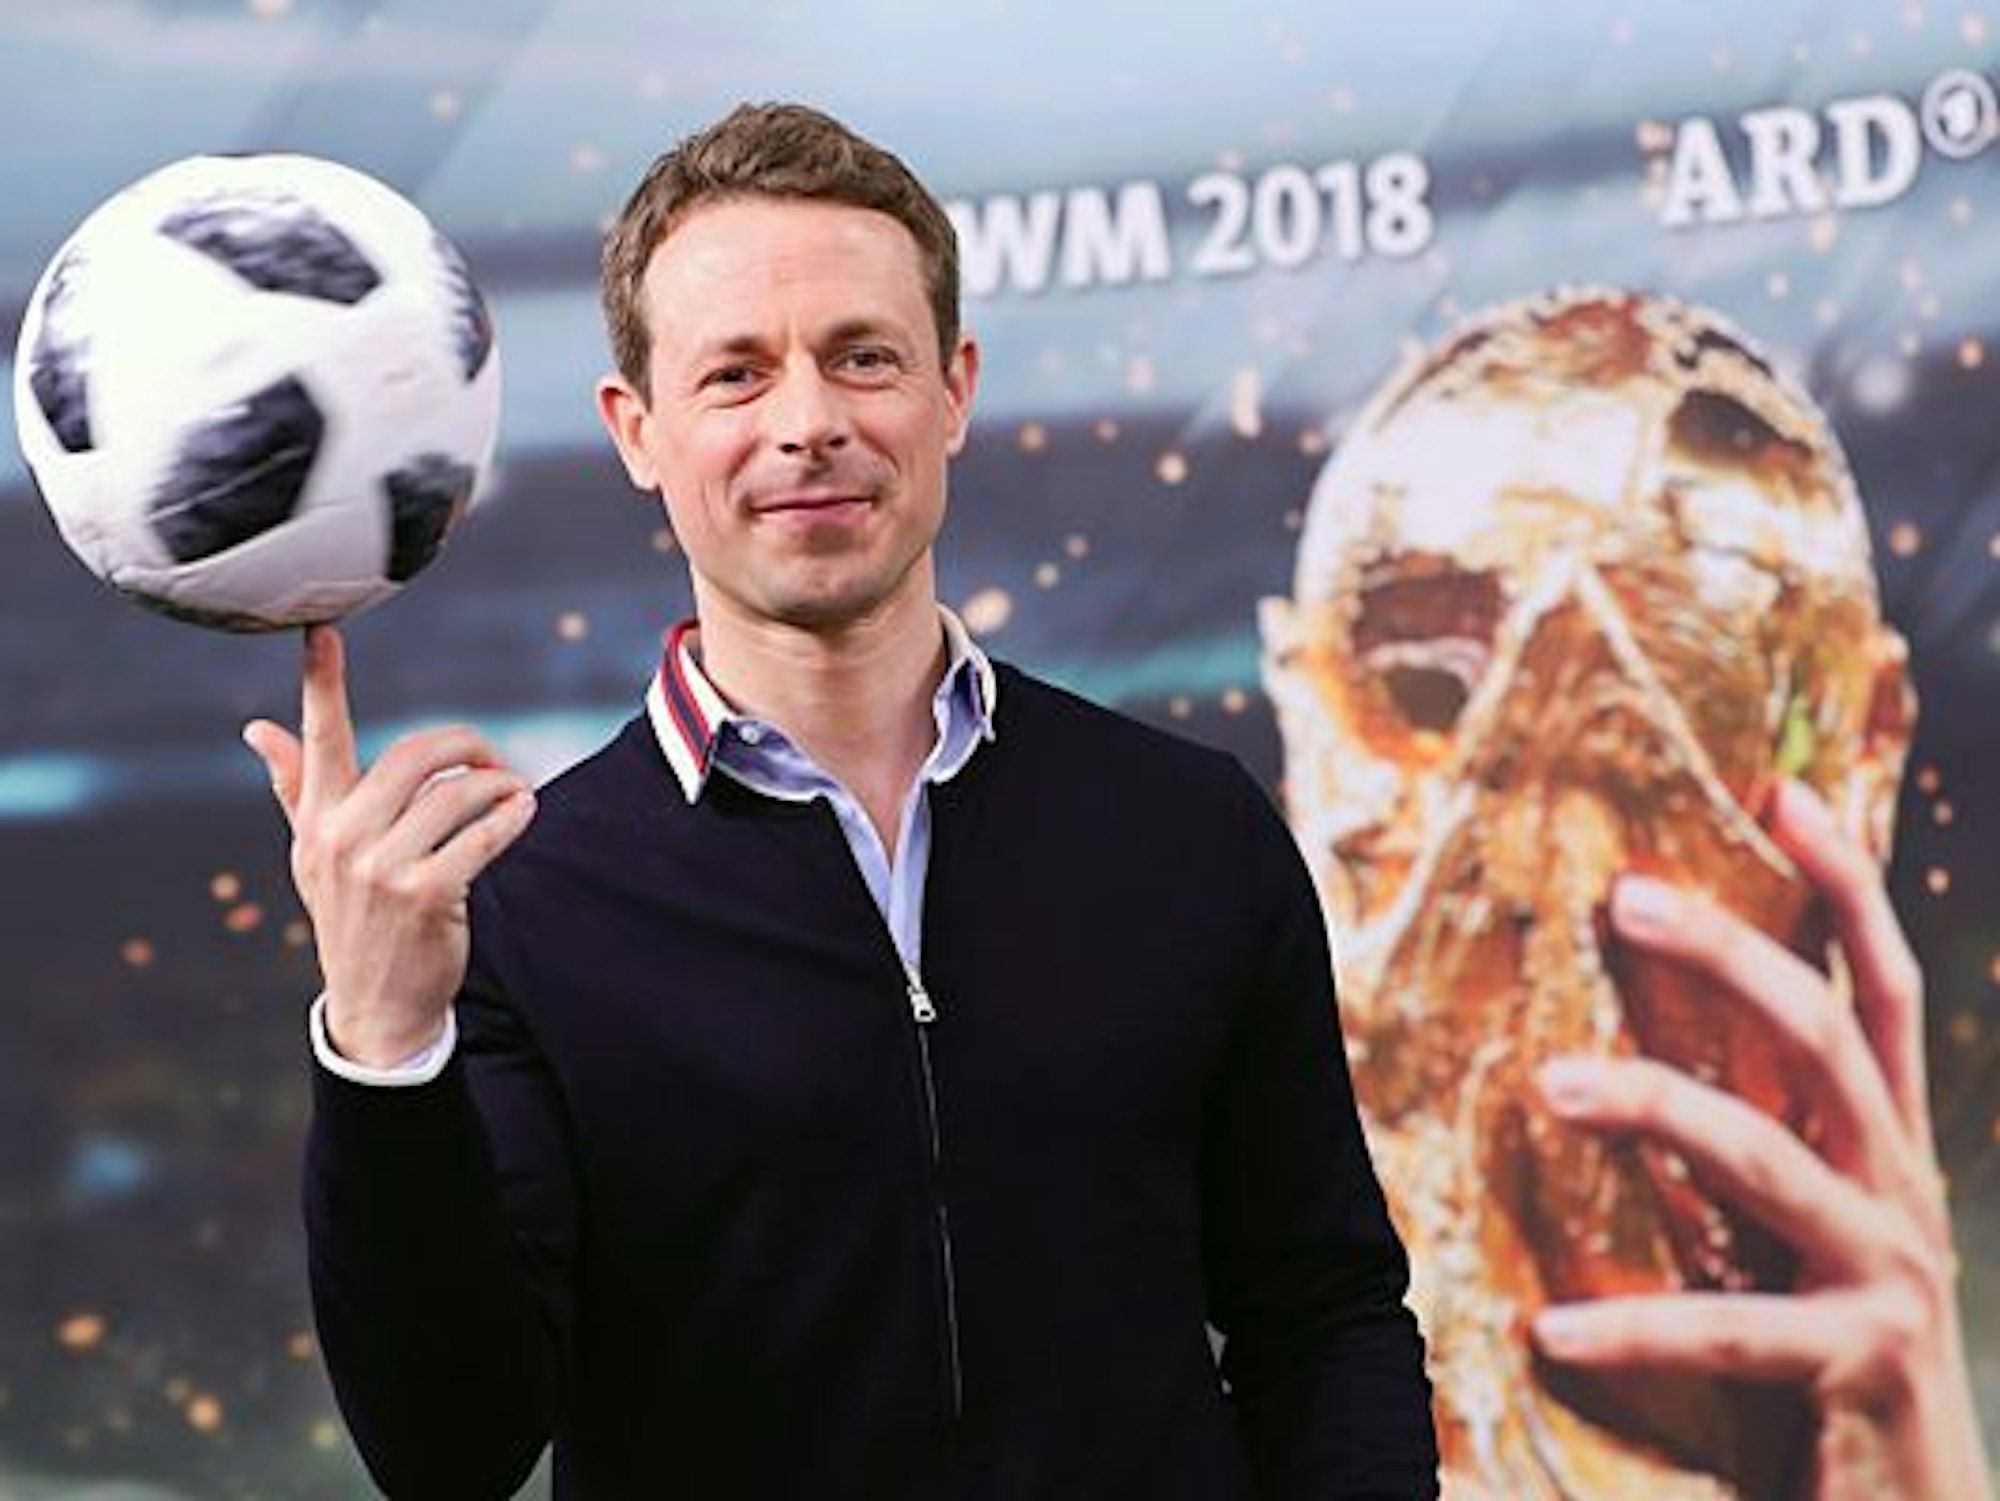 Alexander Bommes balanciert einen Fußball auf seinem Finger und steht vor einer Werbetafel der ARD zur Fußball-WM 2018.